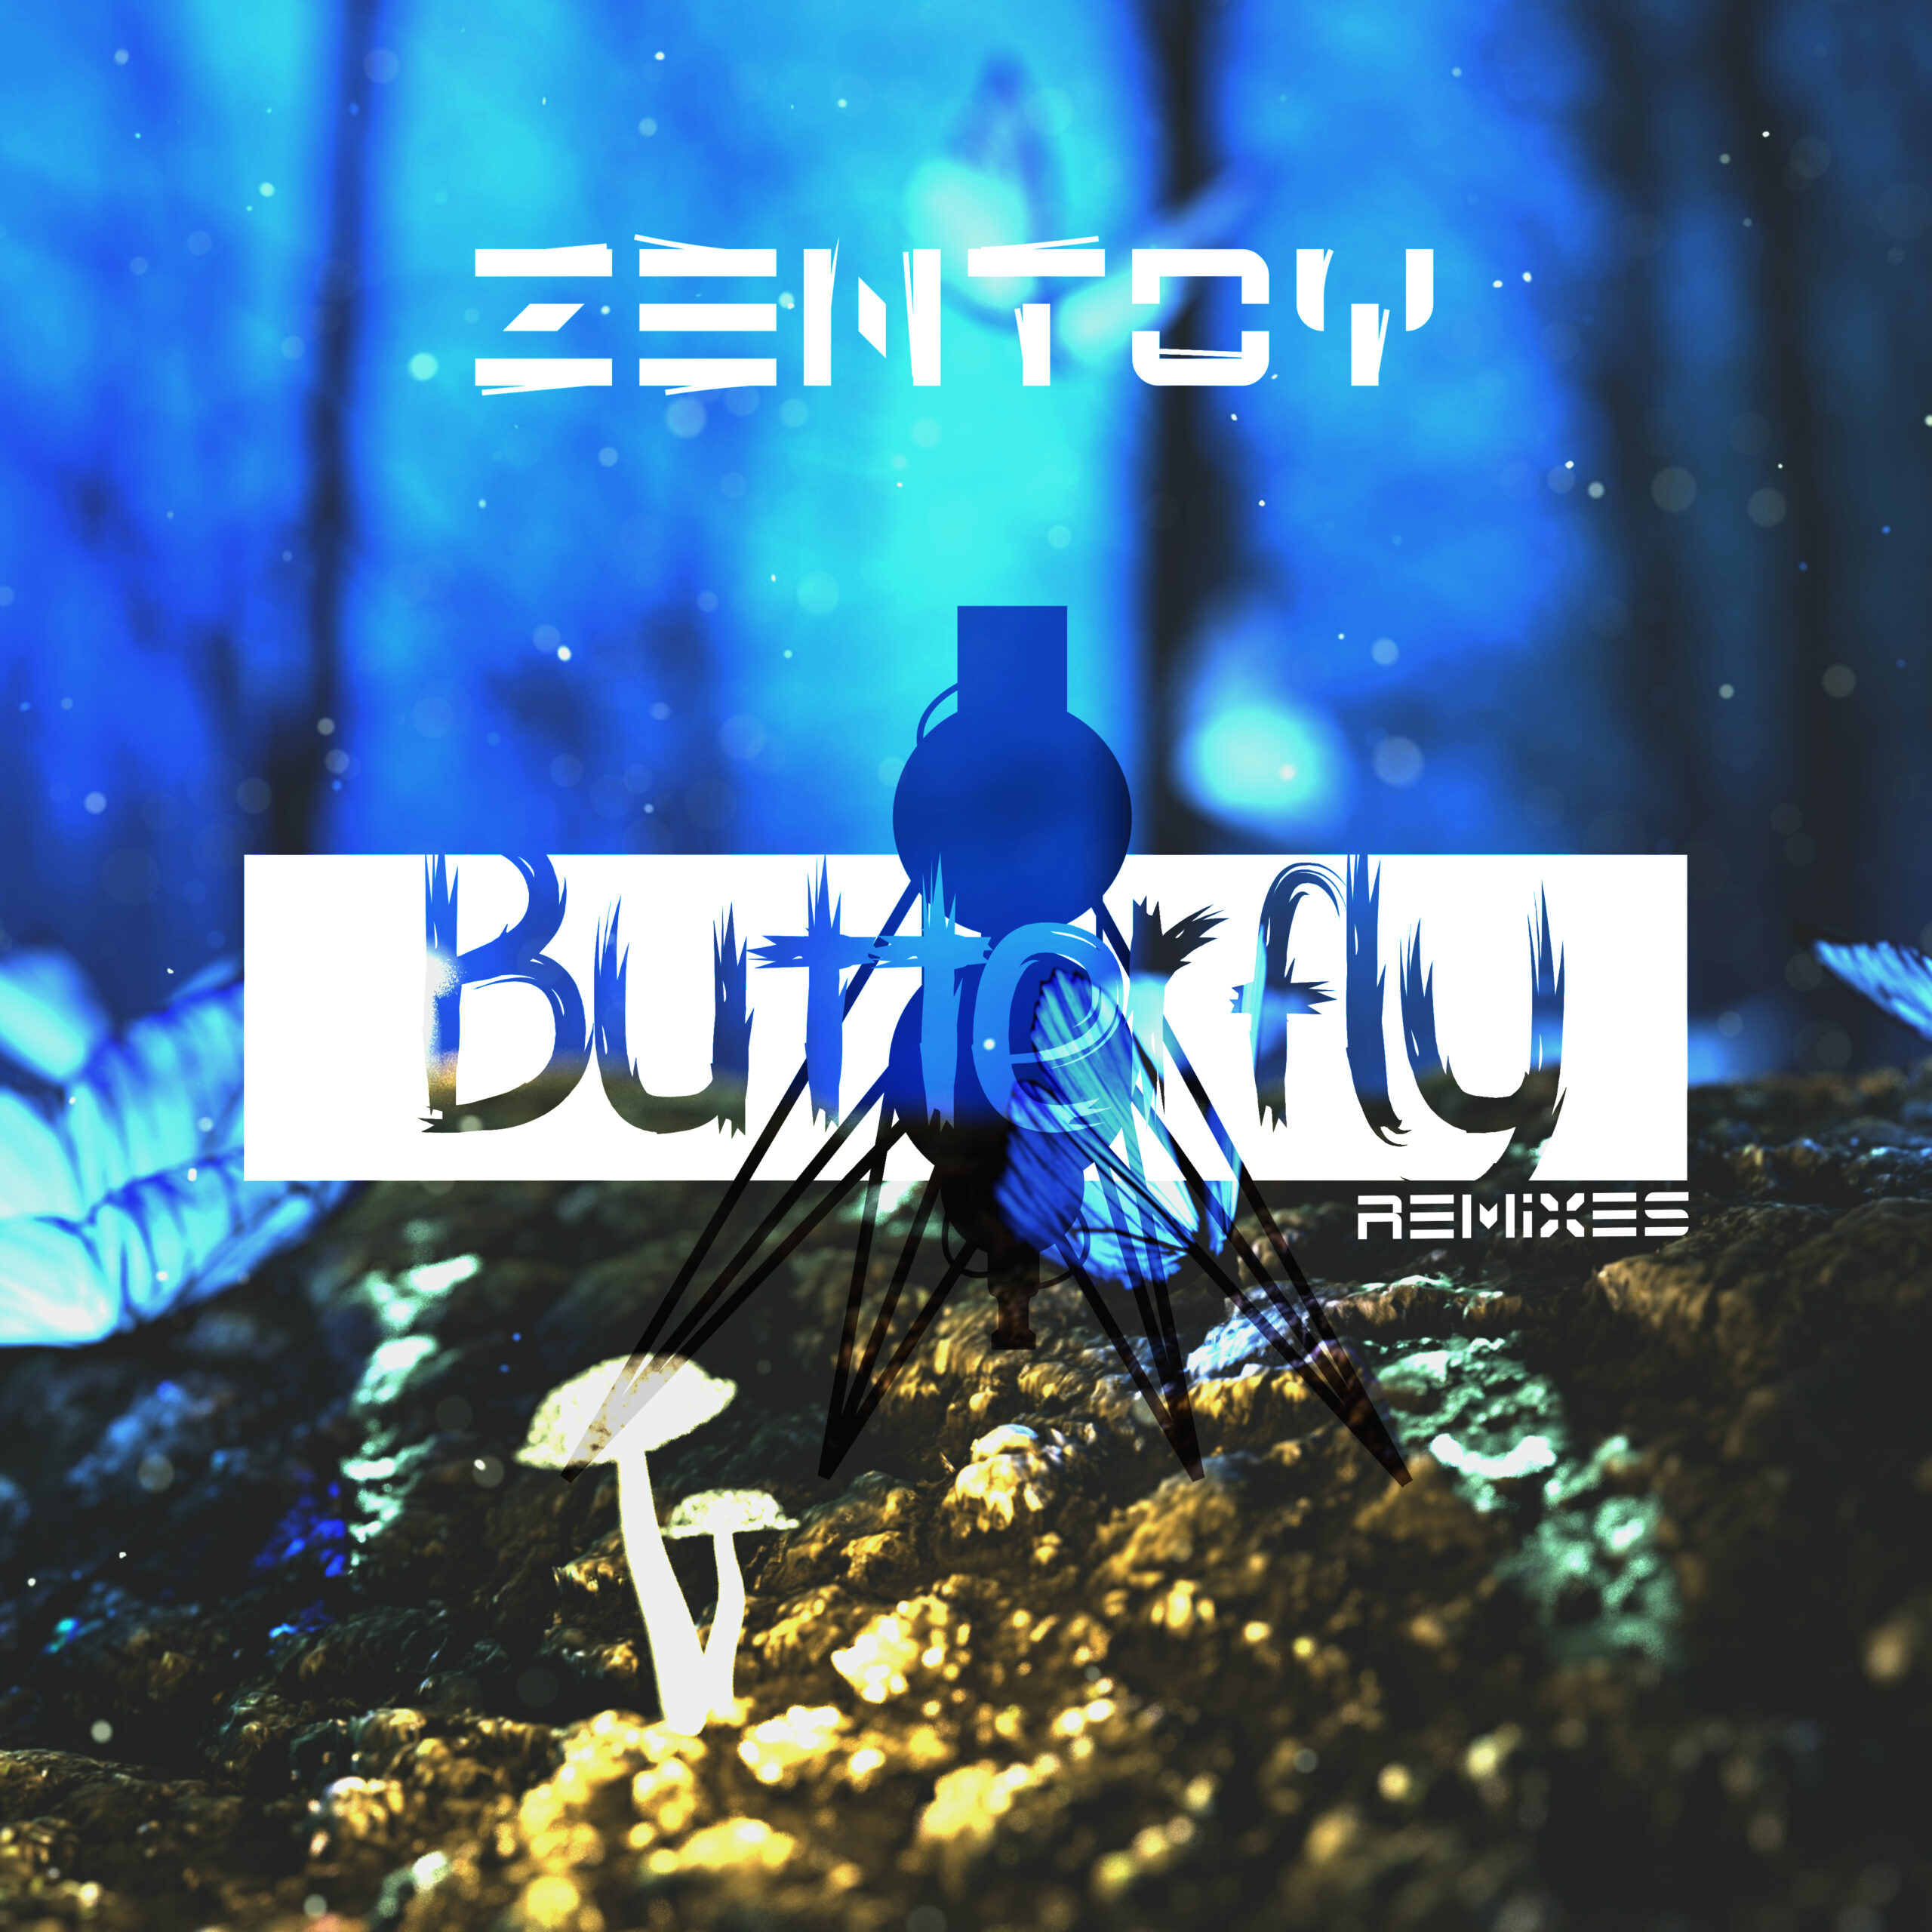 ZenToy - Muziek - Butterfly (Remixes)